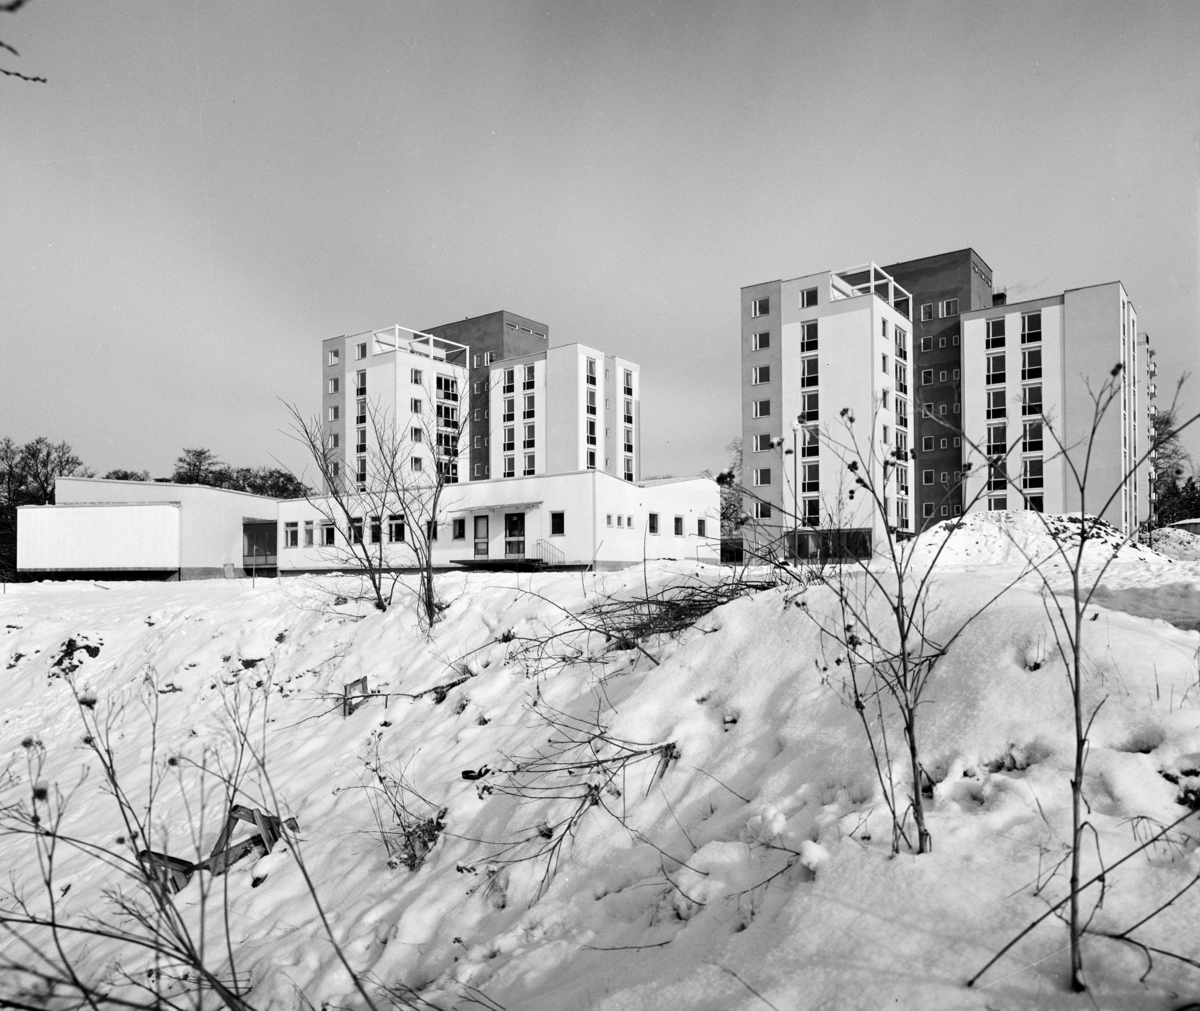 Strömbackens ålderdomshem
Exteriör, två punkthus samt låg köksbyggnad och samlingssal i vinterlandskap. Snötäckt fält i förgrunden.